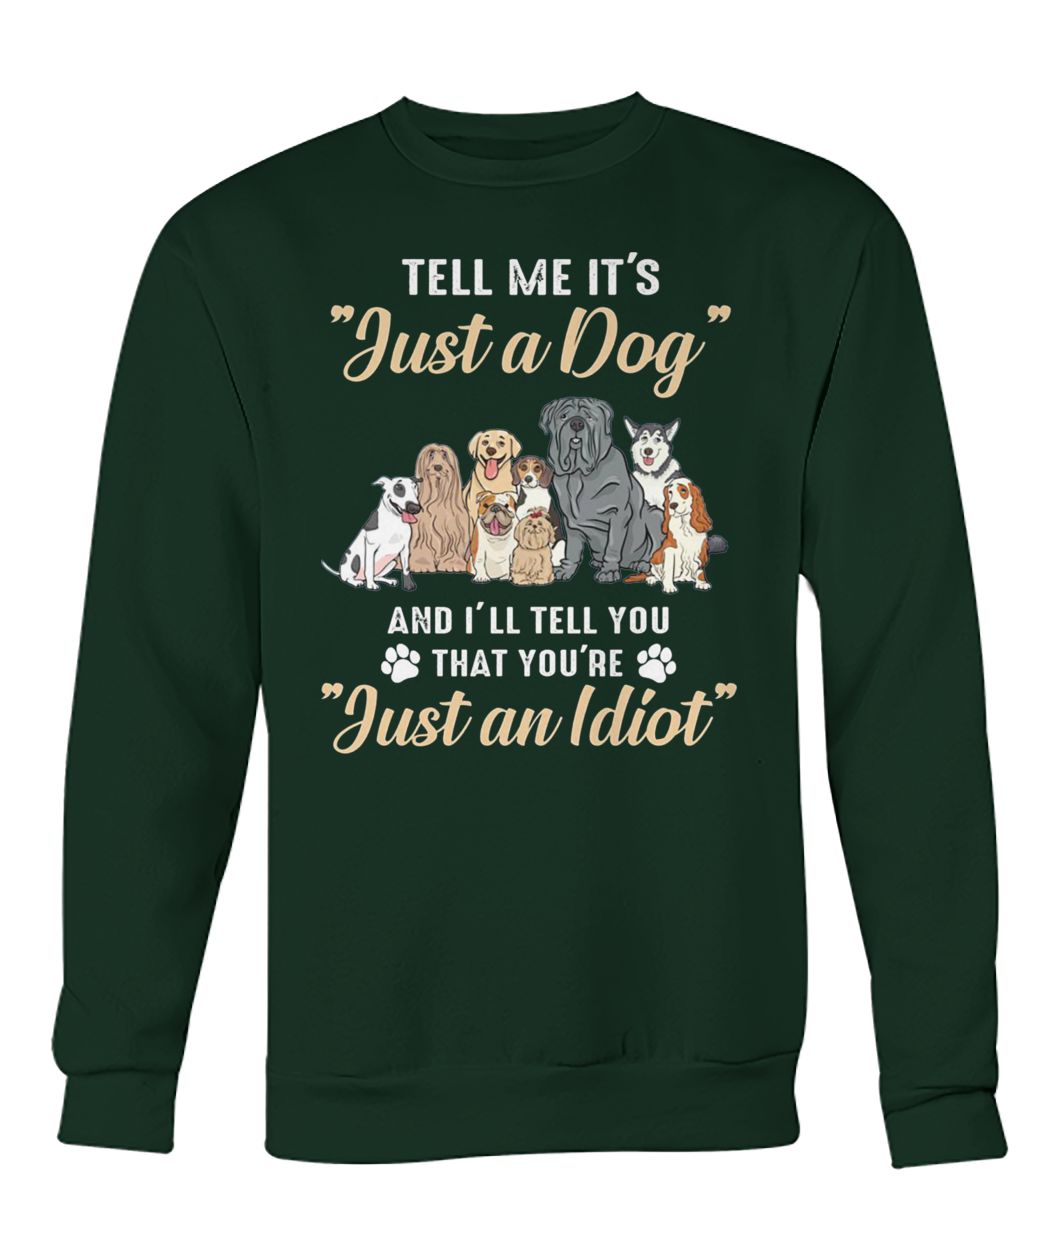 Tell me it's just a dog and I'll tell you that you're just an idiot crew neck sweatshirt